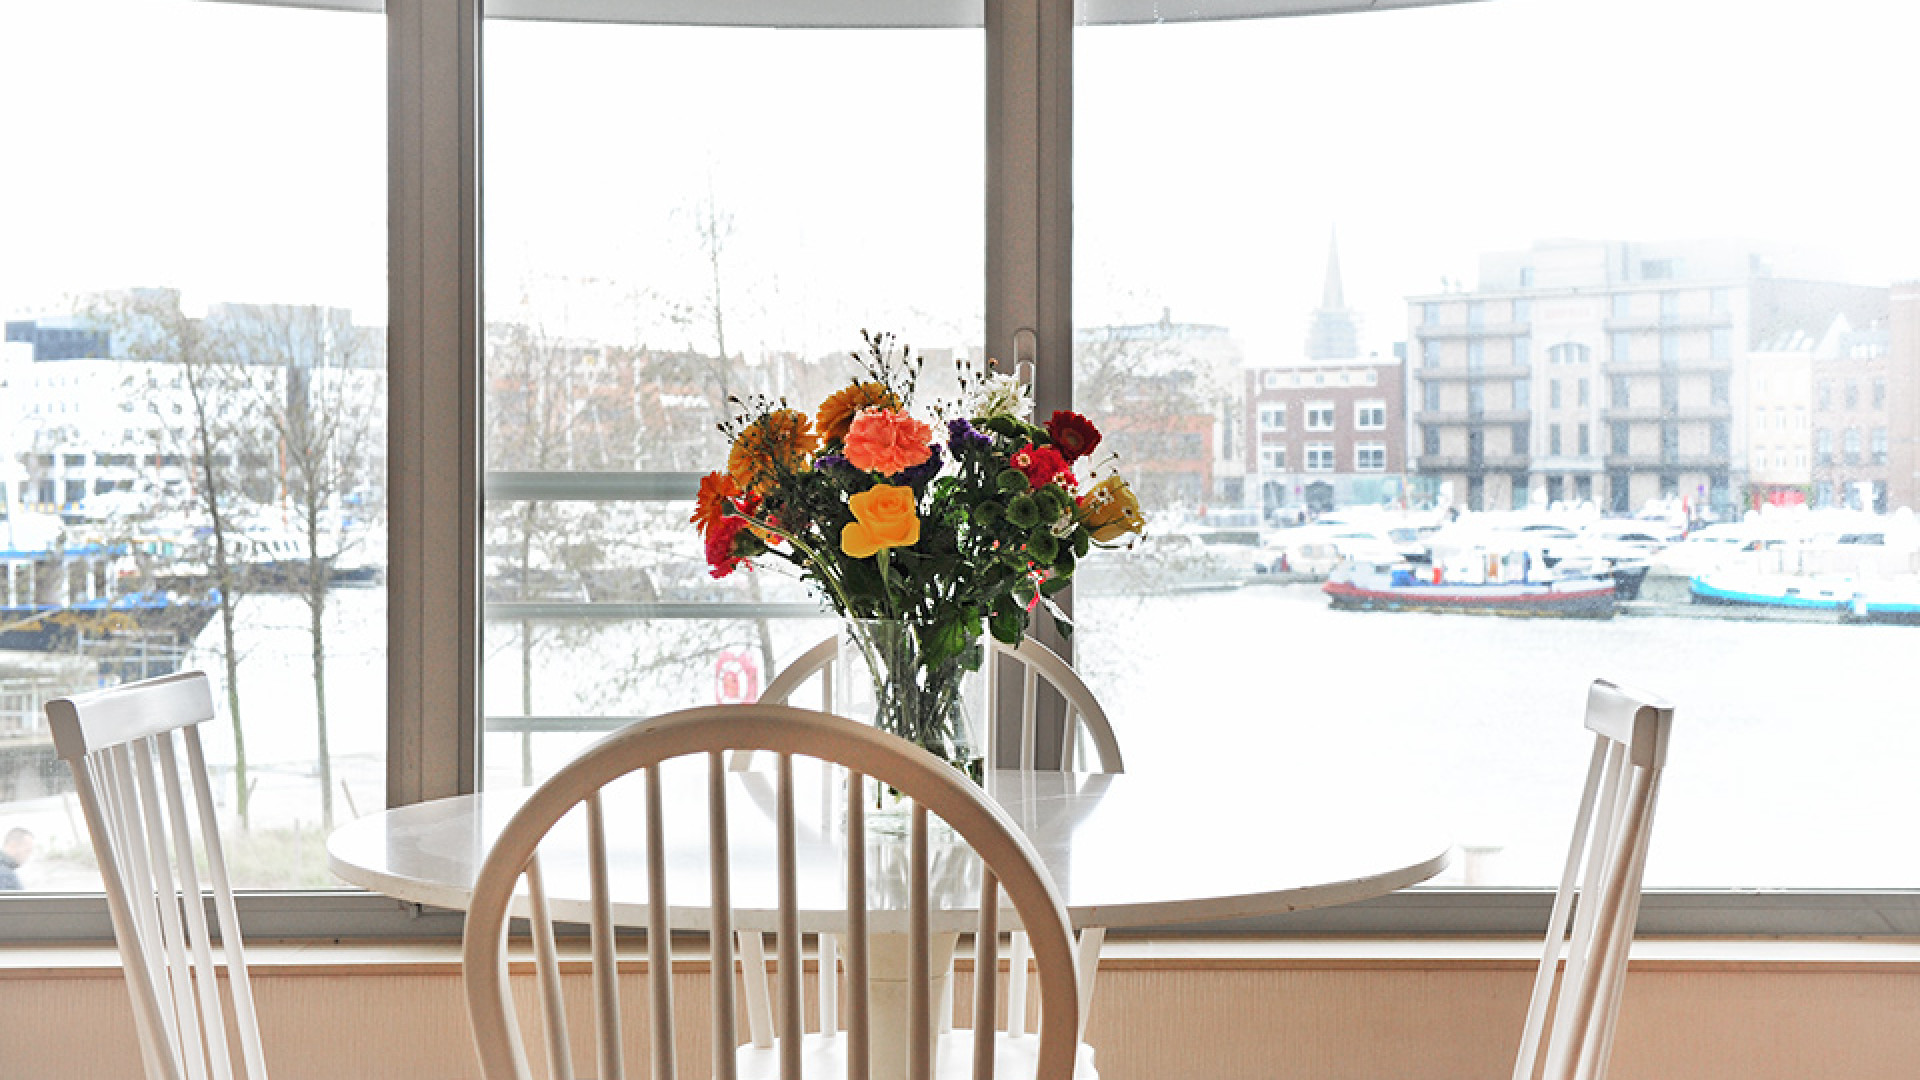 Binnenkijken in het prachtige appartement in Antwerpen van Marc Overmars. Zie foto's 4